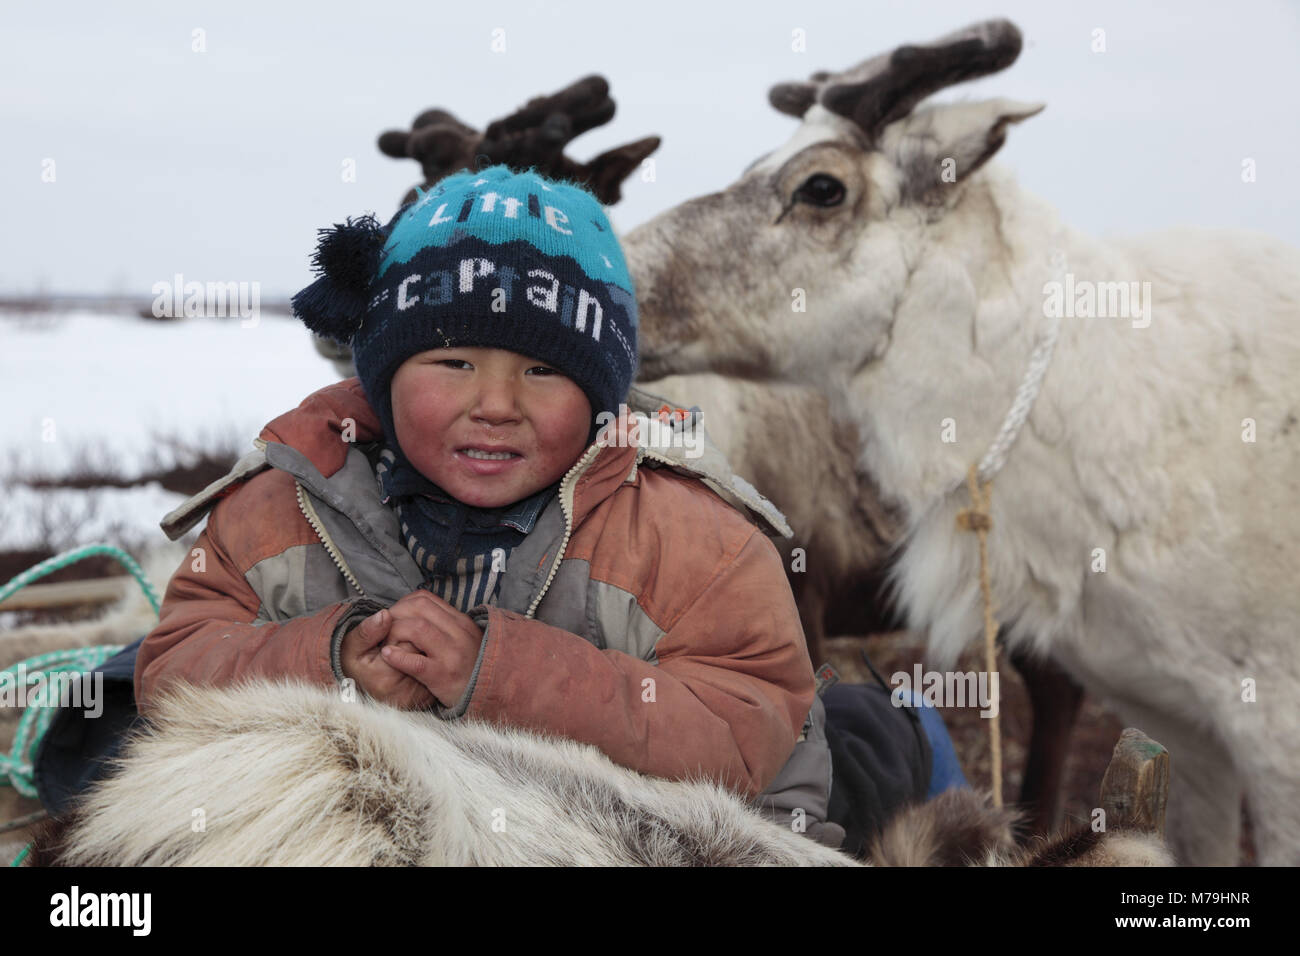 Northern Europe, Russia, Nanya Mar, Nenets, reindeer shepherds, child, boy, Stock Photo